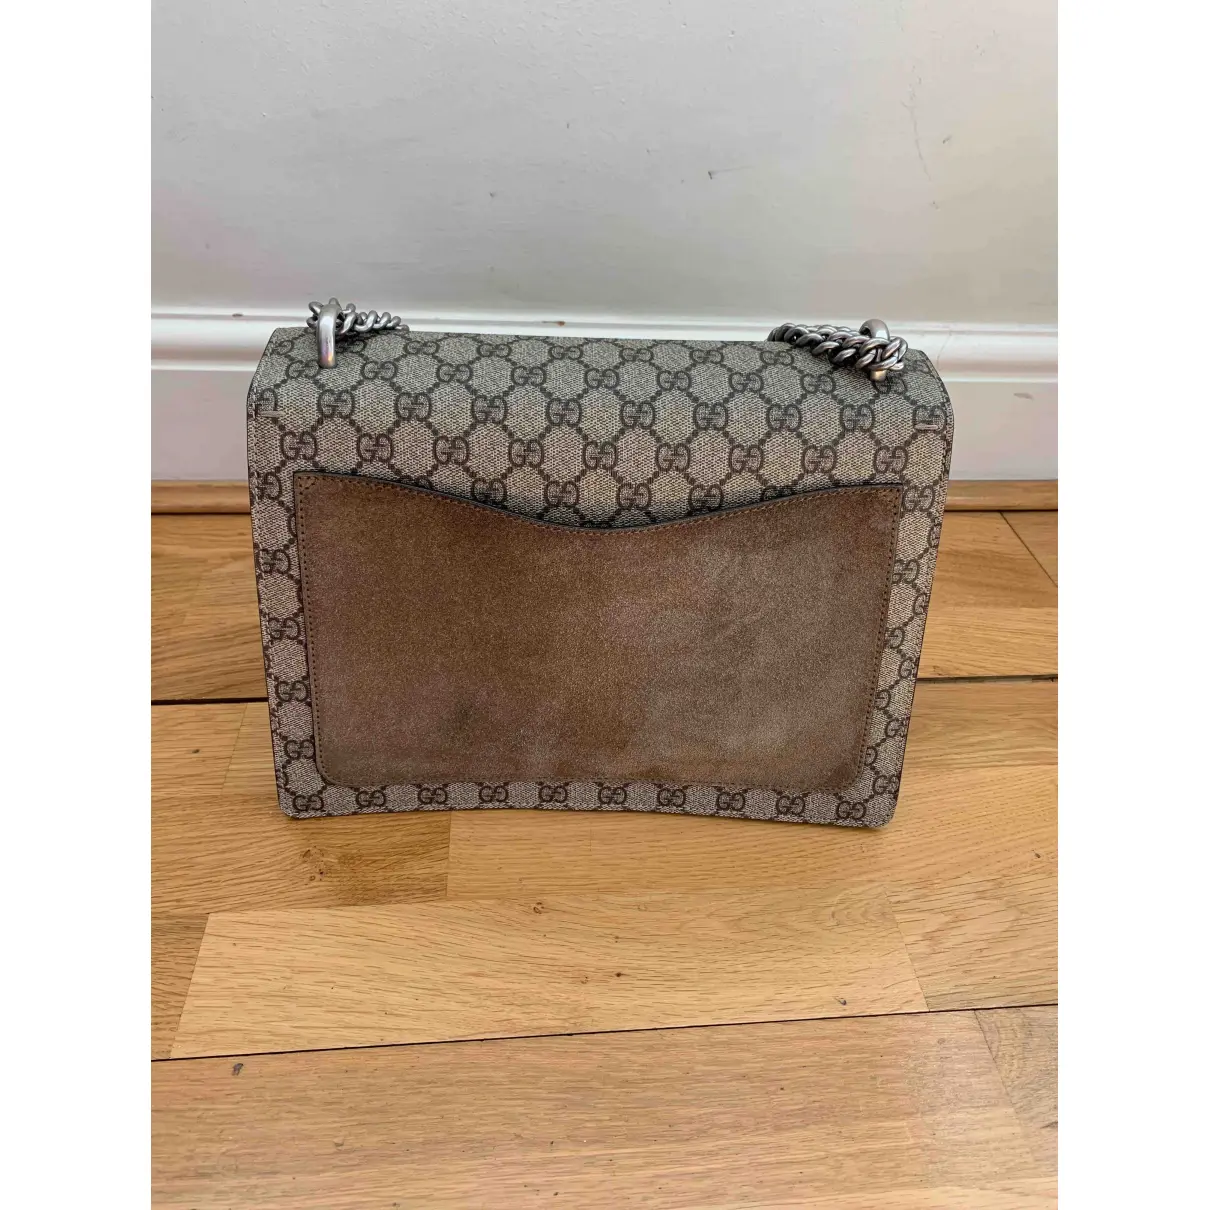 Buy Gucci Dionysus handbag online